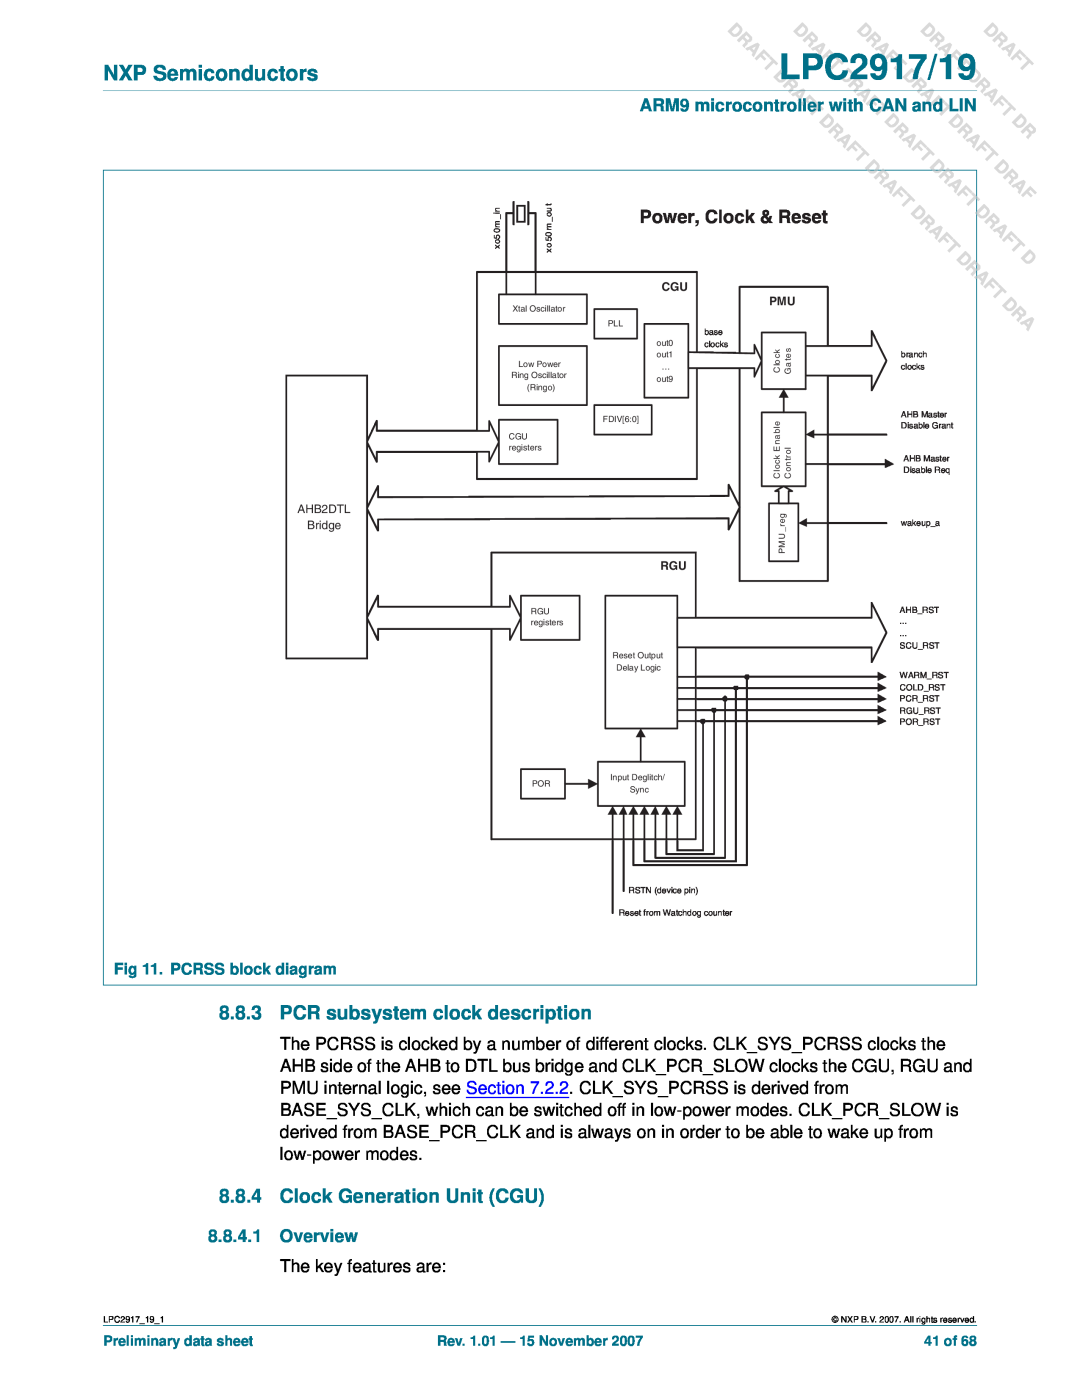 NXP Semiconductors PCR subsystem clock description, Clock Generation Unit CGU, DLPC2917/19, Power, Clock & Reset 